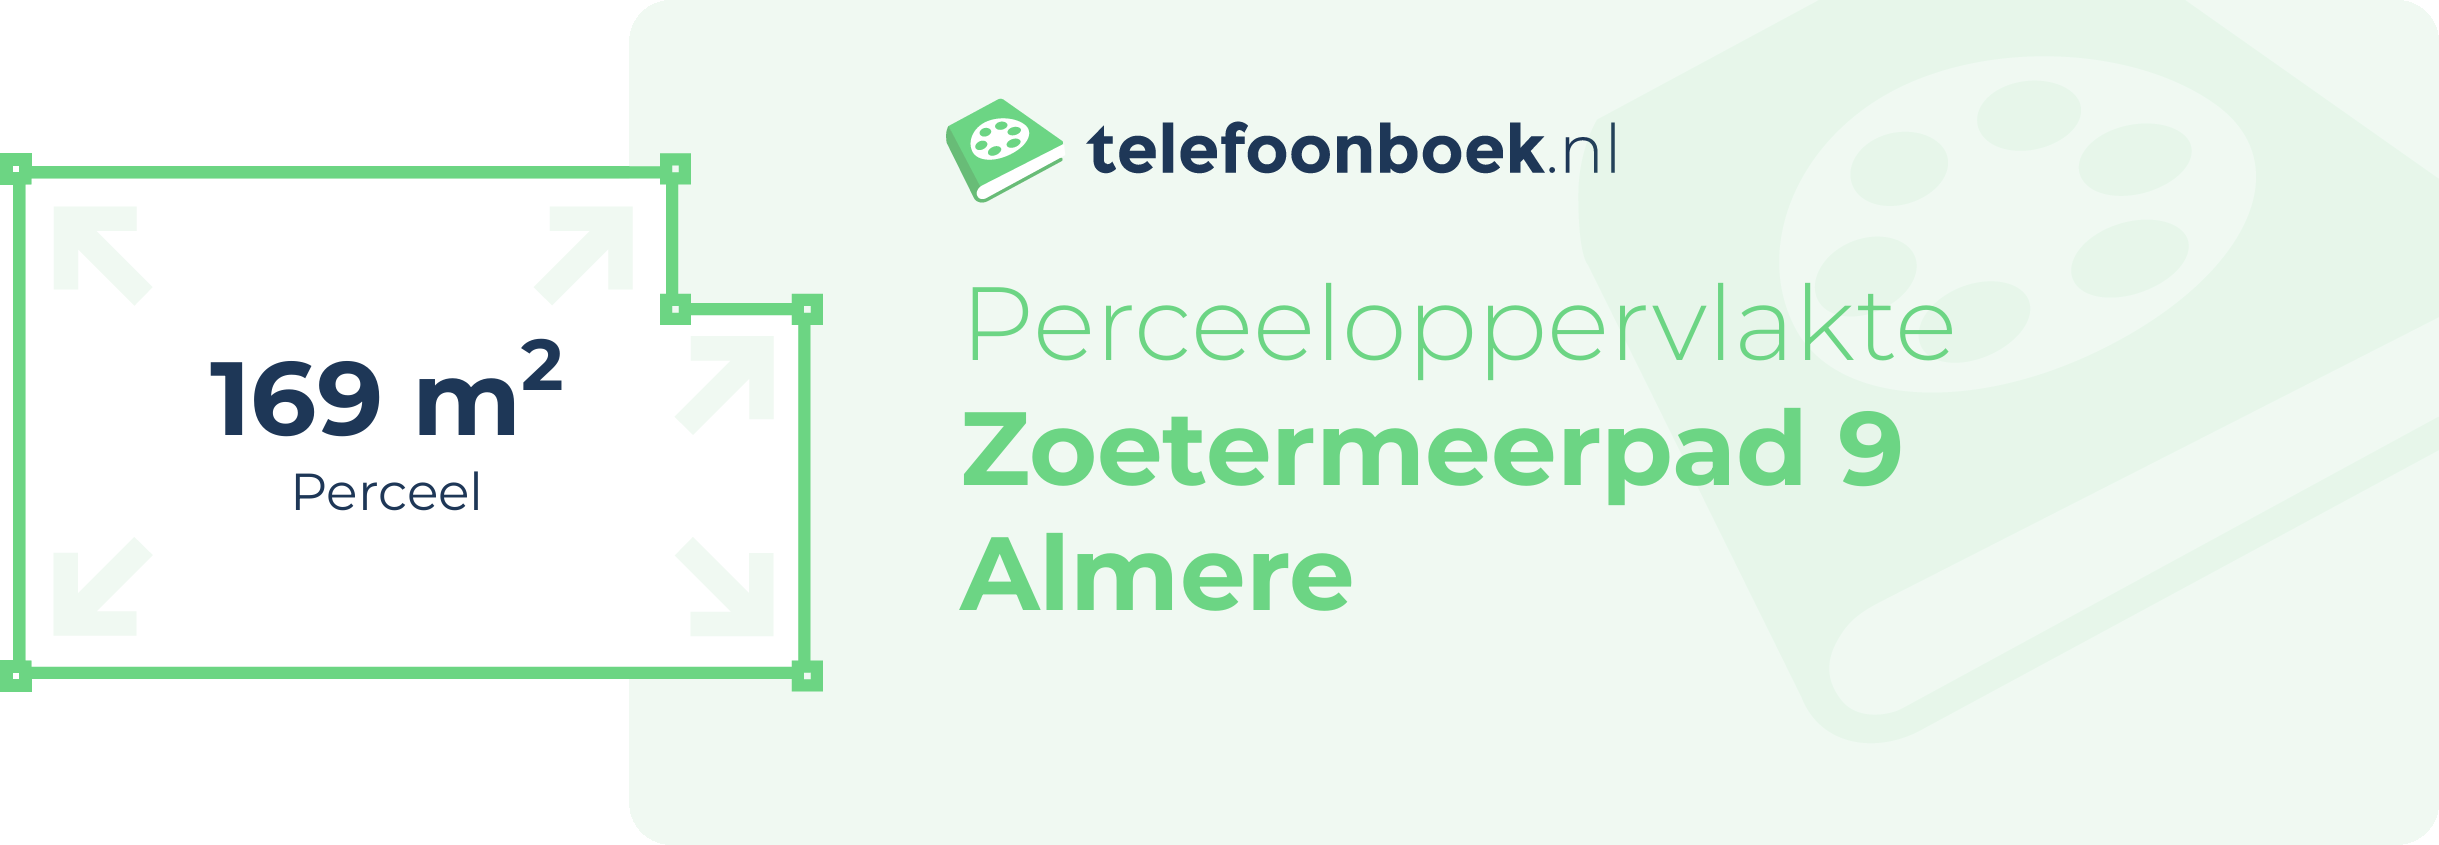 Perceeloppervlakte Zoetermeerpad 9 Almere